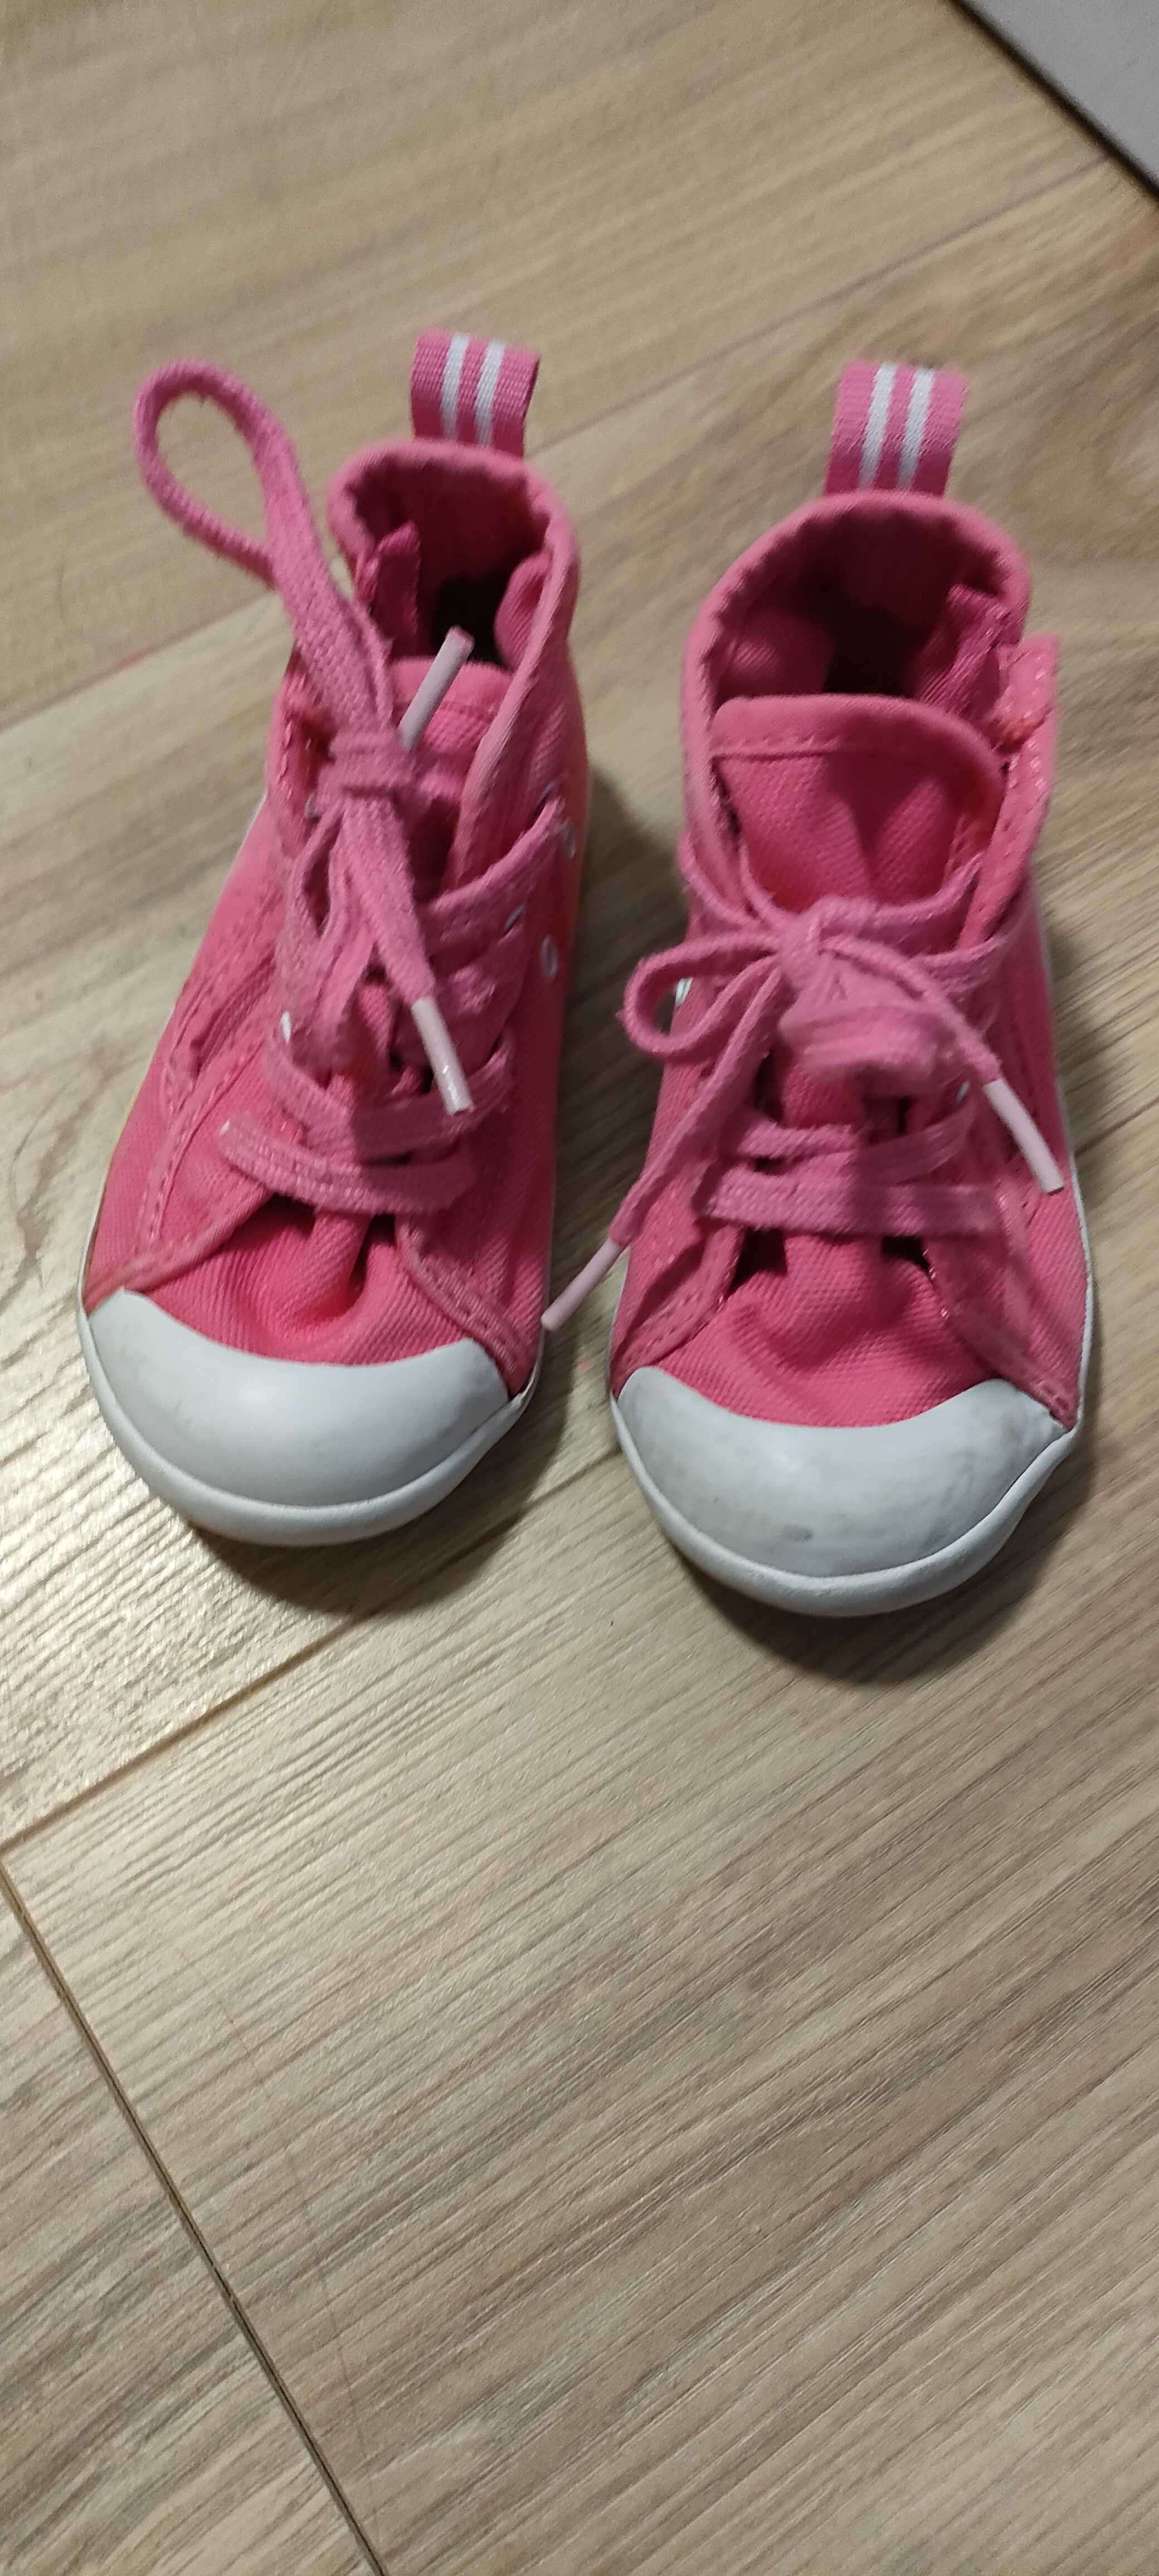 Domyos Canvas buty tenisówki trampki dziecięce różowe r. 23 14,5 cm